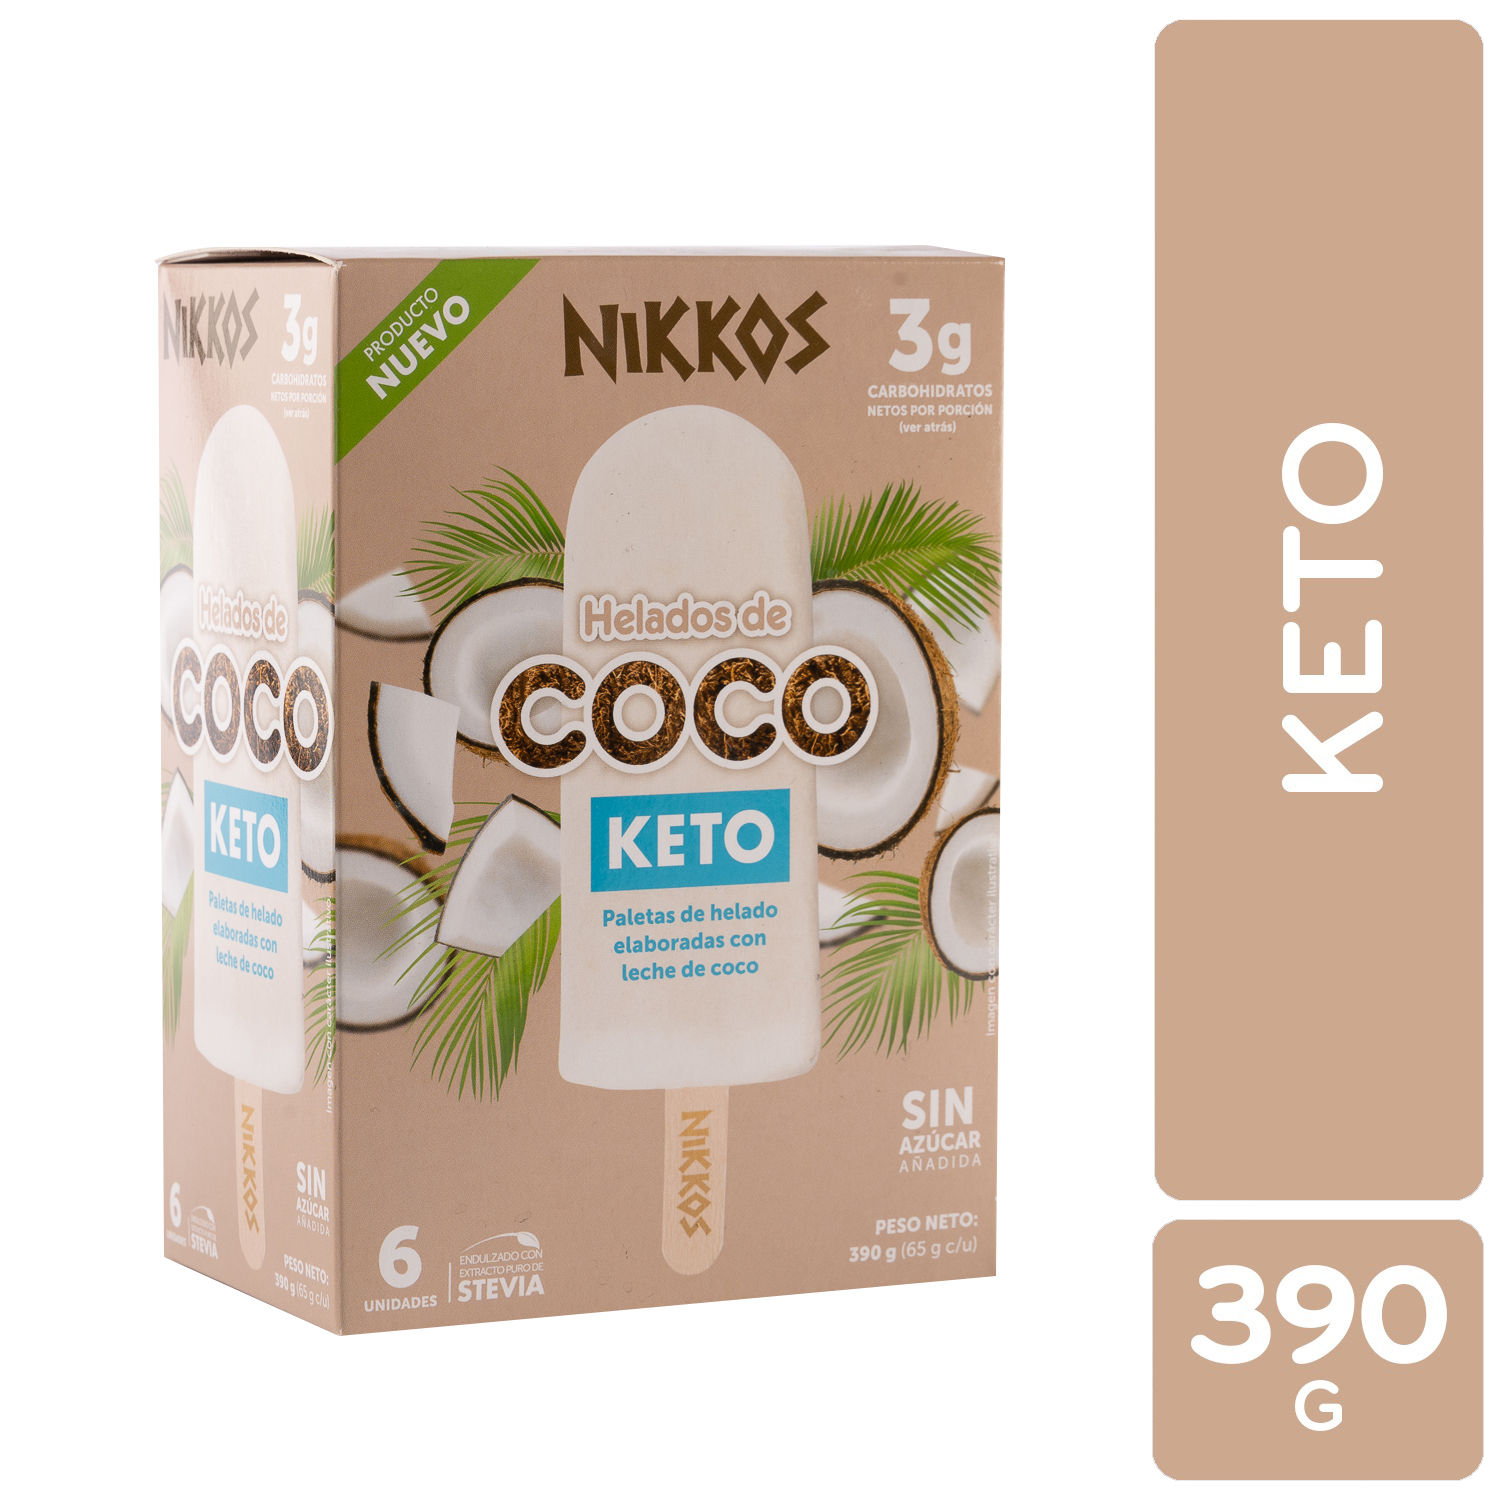 Paleta Keto Coco Nikkos Caja 390 G